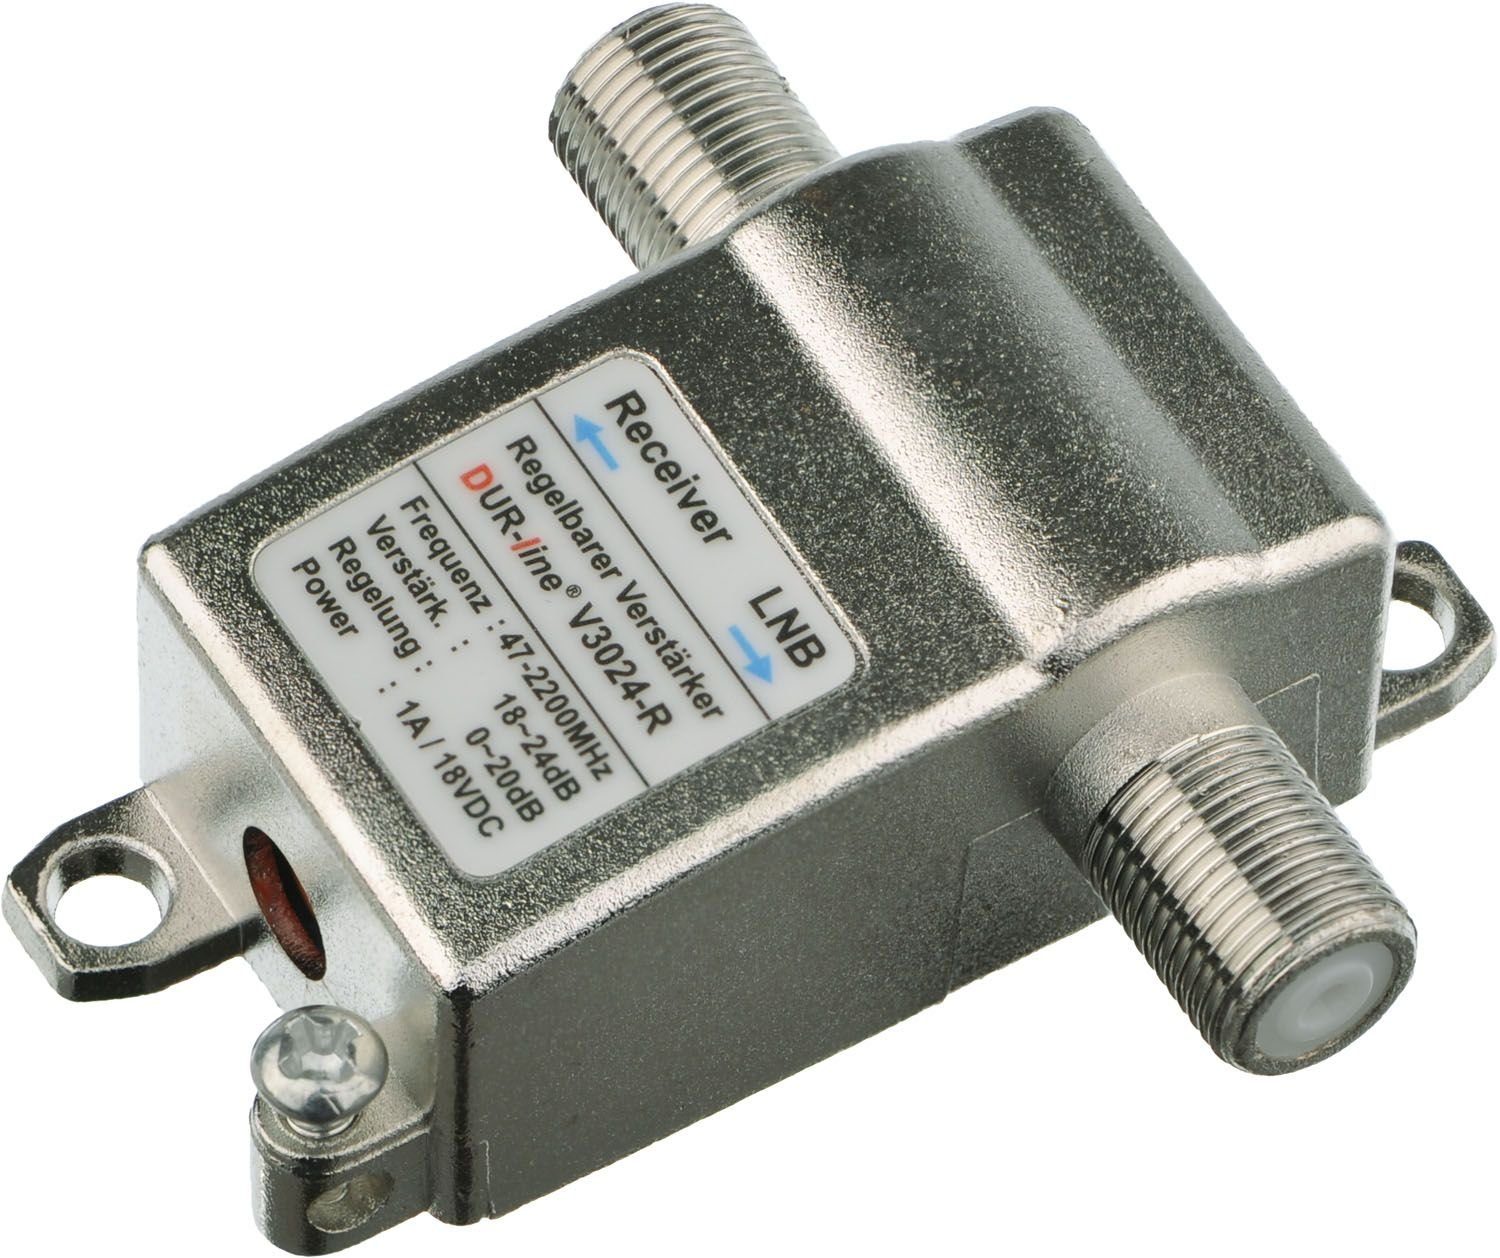 V3024-R DUR-line SAT-Kabel Inlineverstärker DUR-line -